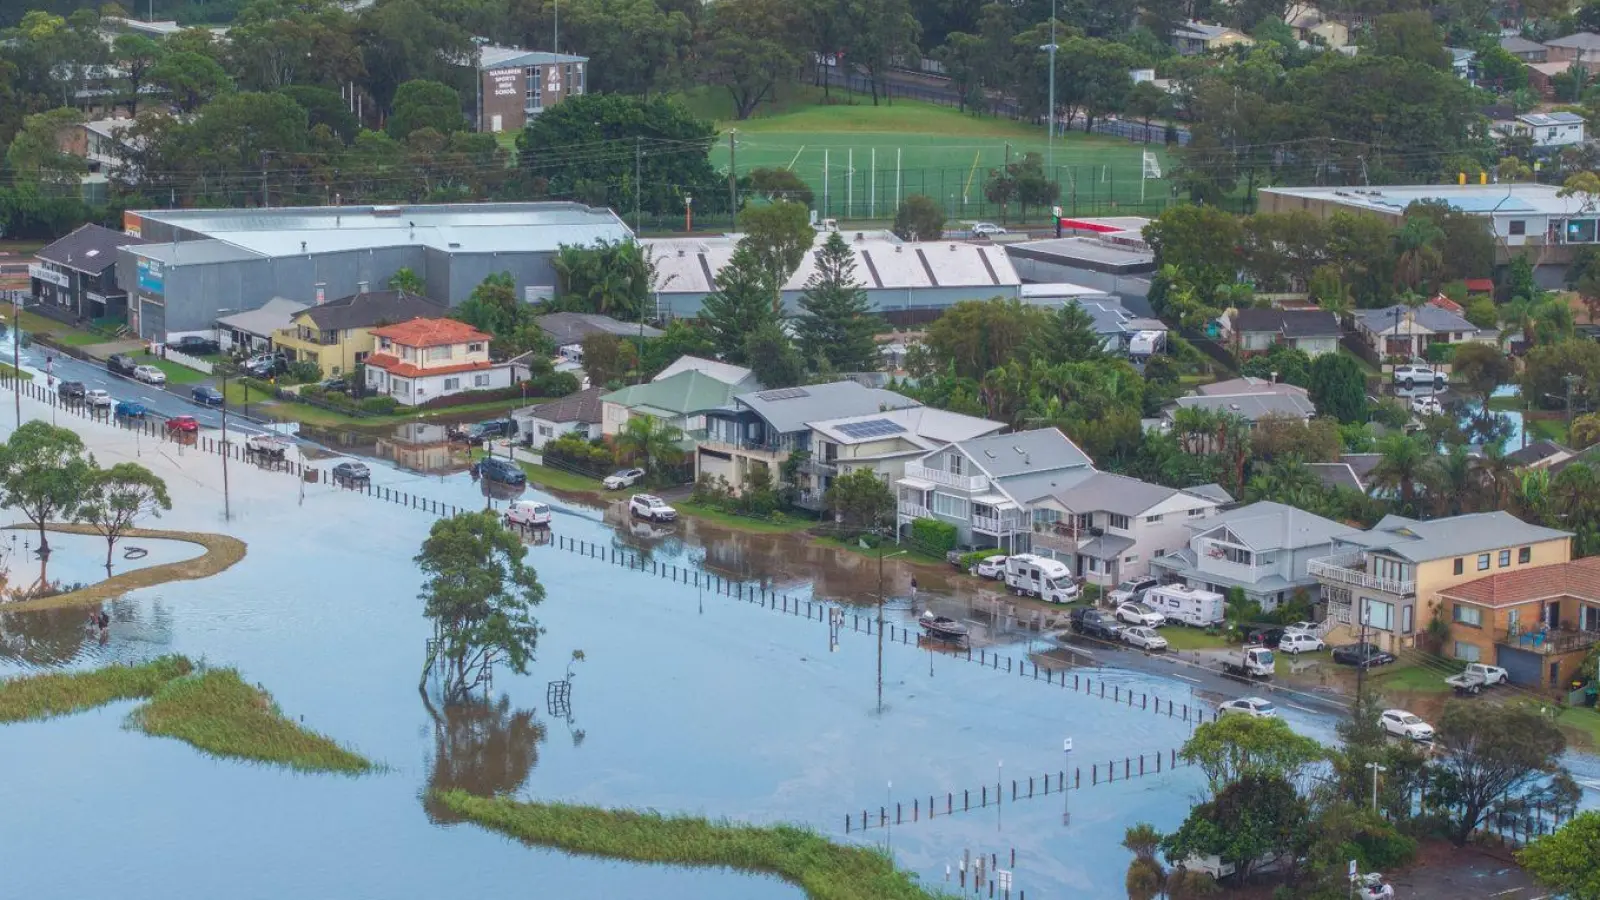 Rekordniederschläge in Sydney und Teilen von Neusüdwales haben zu Überschwemmungen und weitreichenden Schäden geführt, so dass die Behörden für einige Gemeinden Evakuierungsmaßnahmen anordneten. (Foto: Tim Seaton/AAP/dpa)